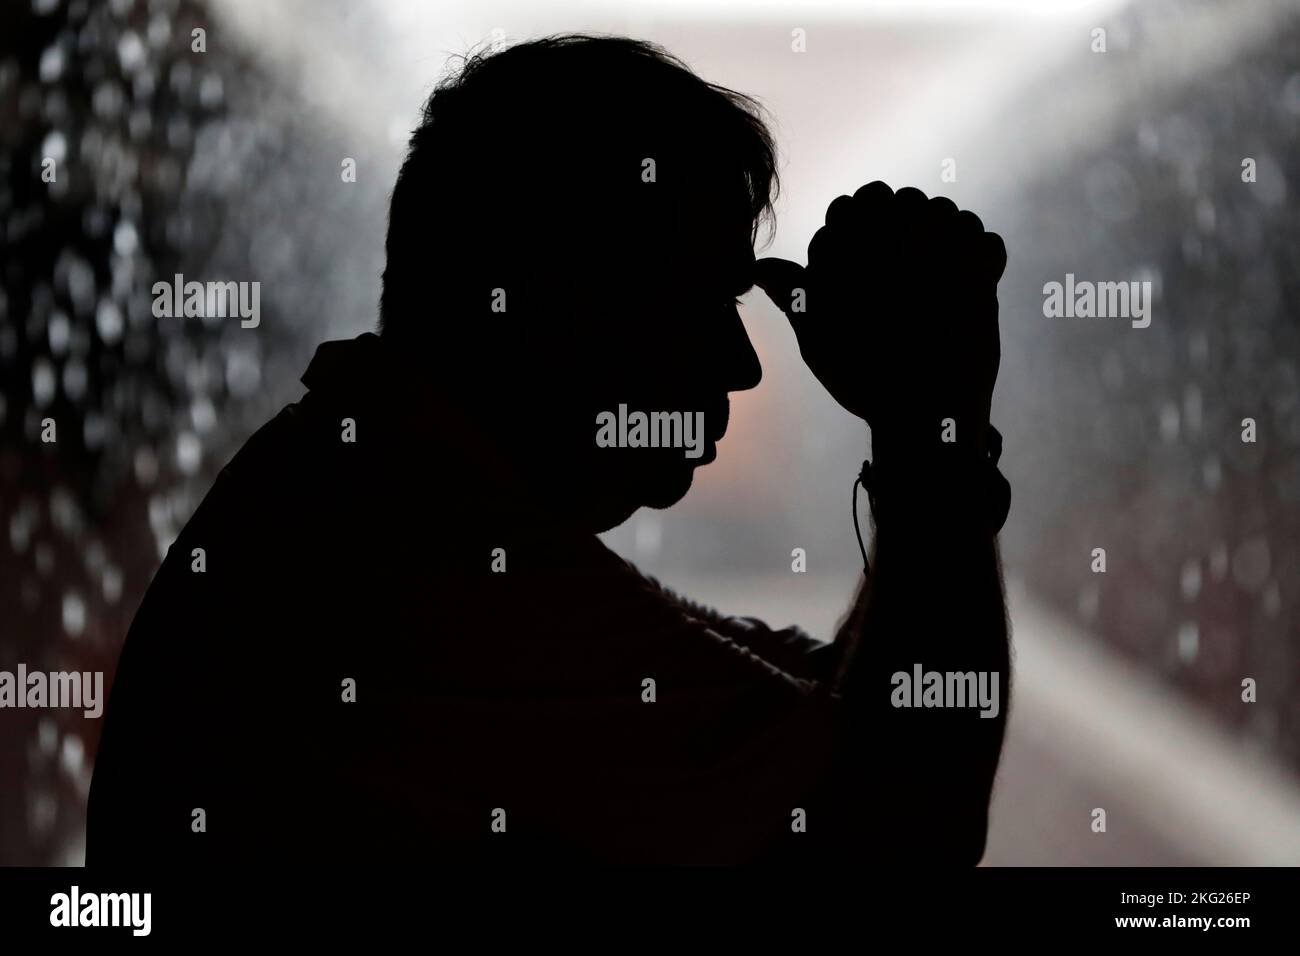 Schwarz-weiße Silhouette eines Mannes, der während der Regenzeit betet. Stockfoto